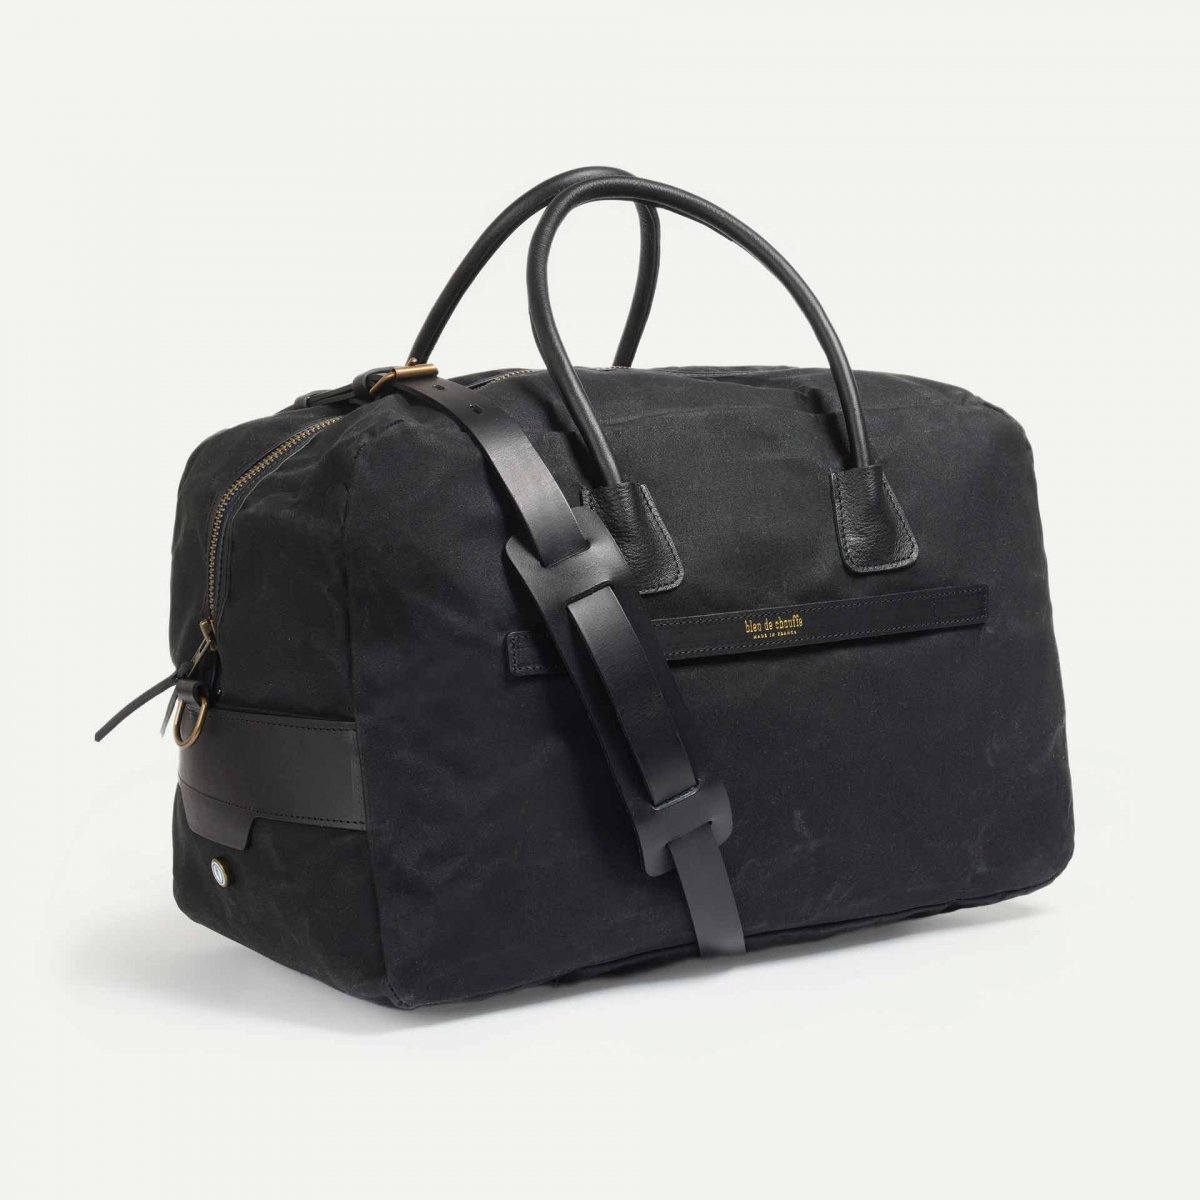 Zephir travel bag - Black waxed (image n°1)